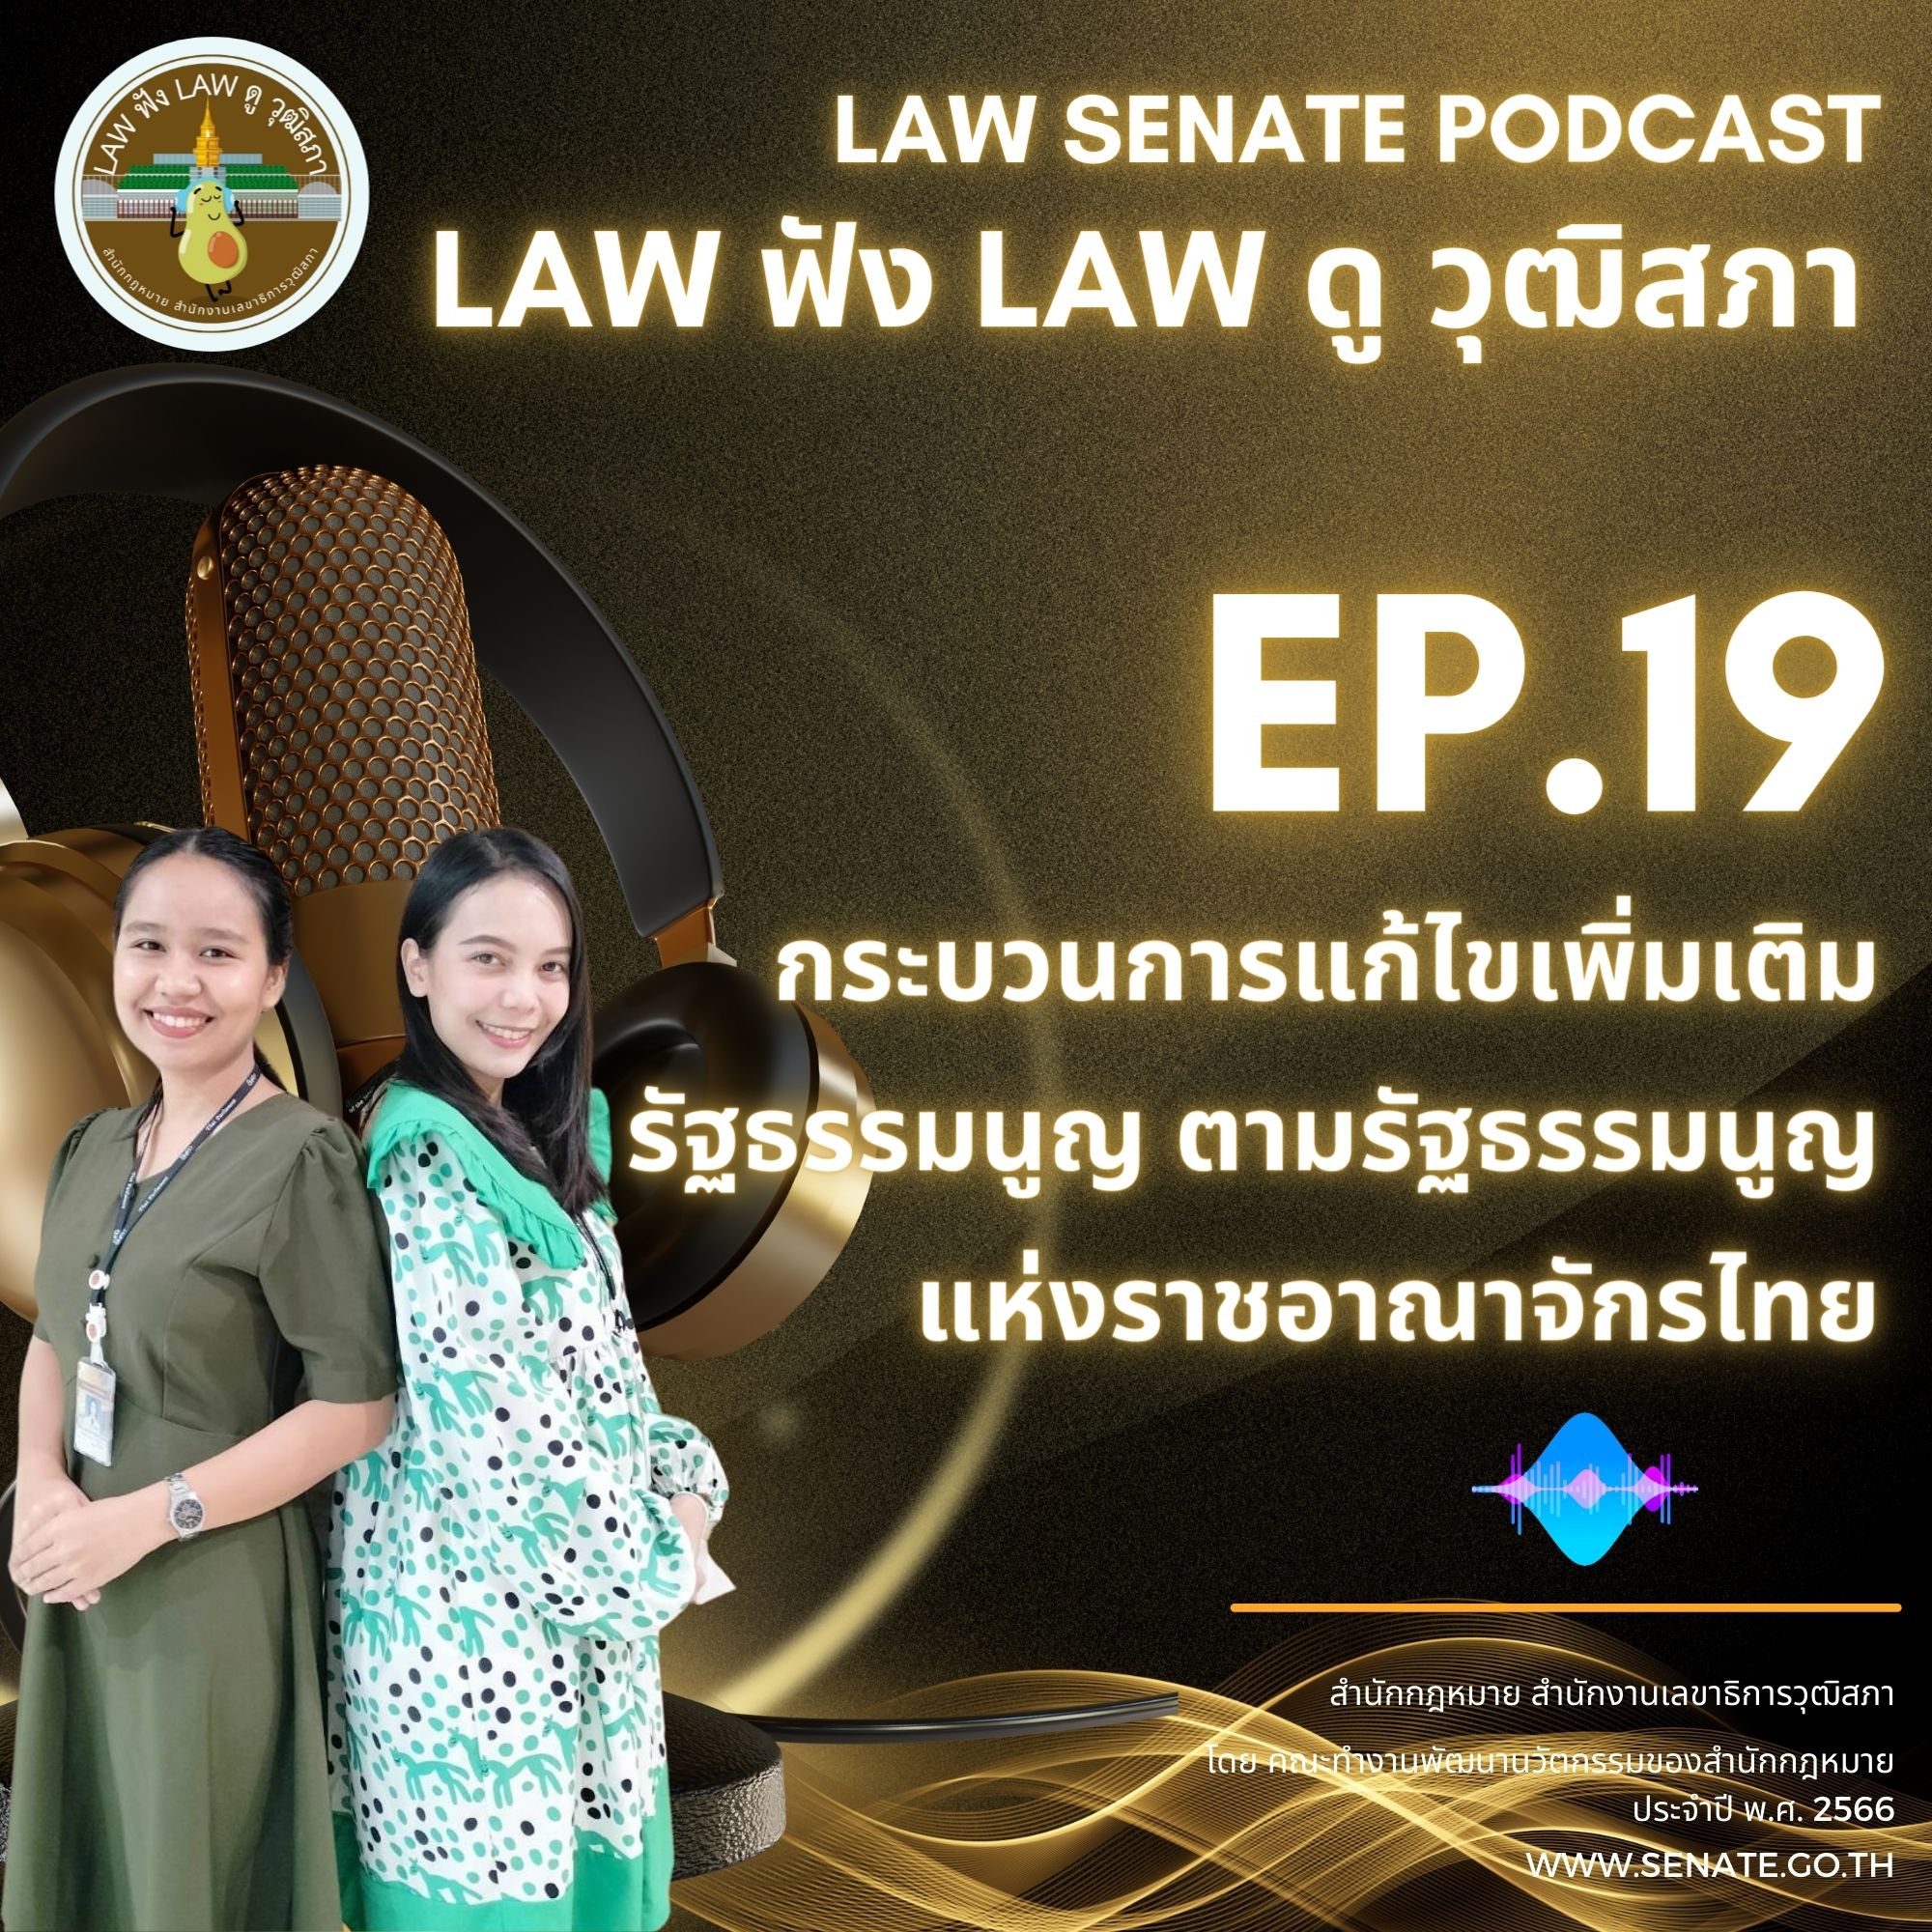 Ep.19 "กระบวนการแก้ไขเพิ่มเติมรัฐธรรมนูญ ตามรัฐธรรมนูญแห่งราชอาณาจักรไทย"